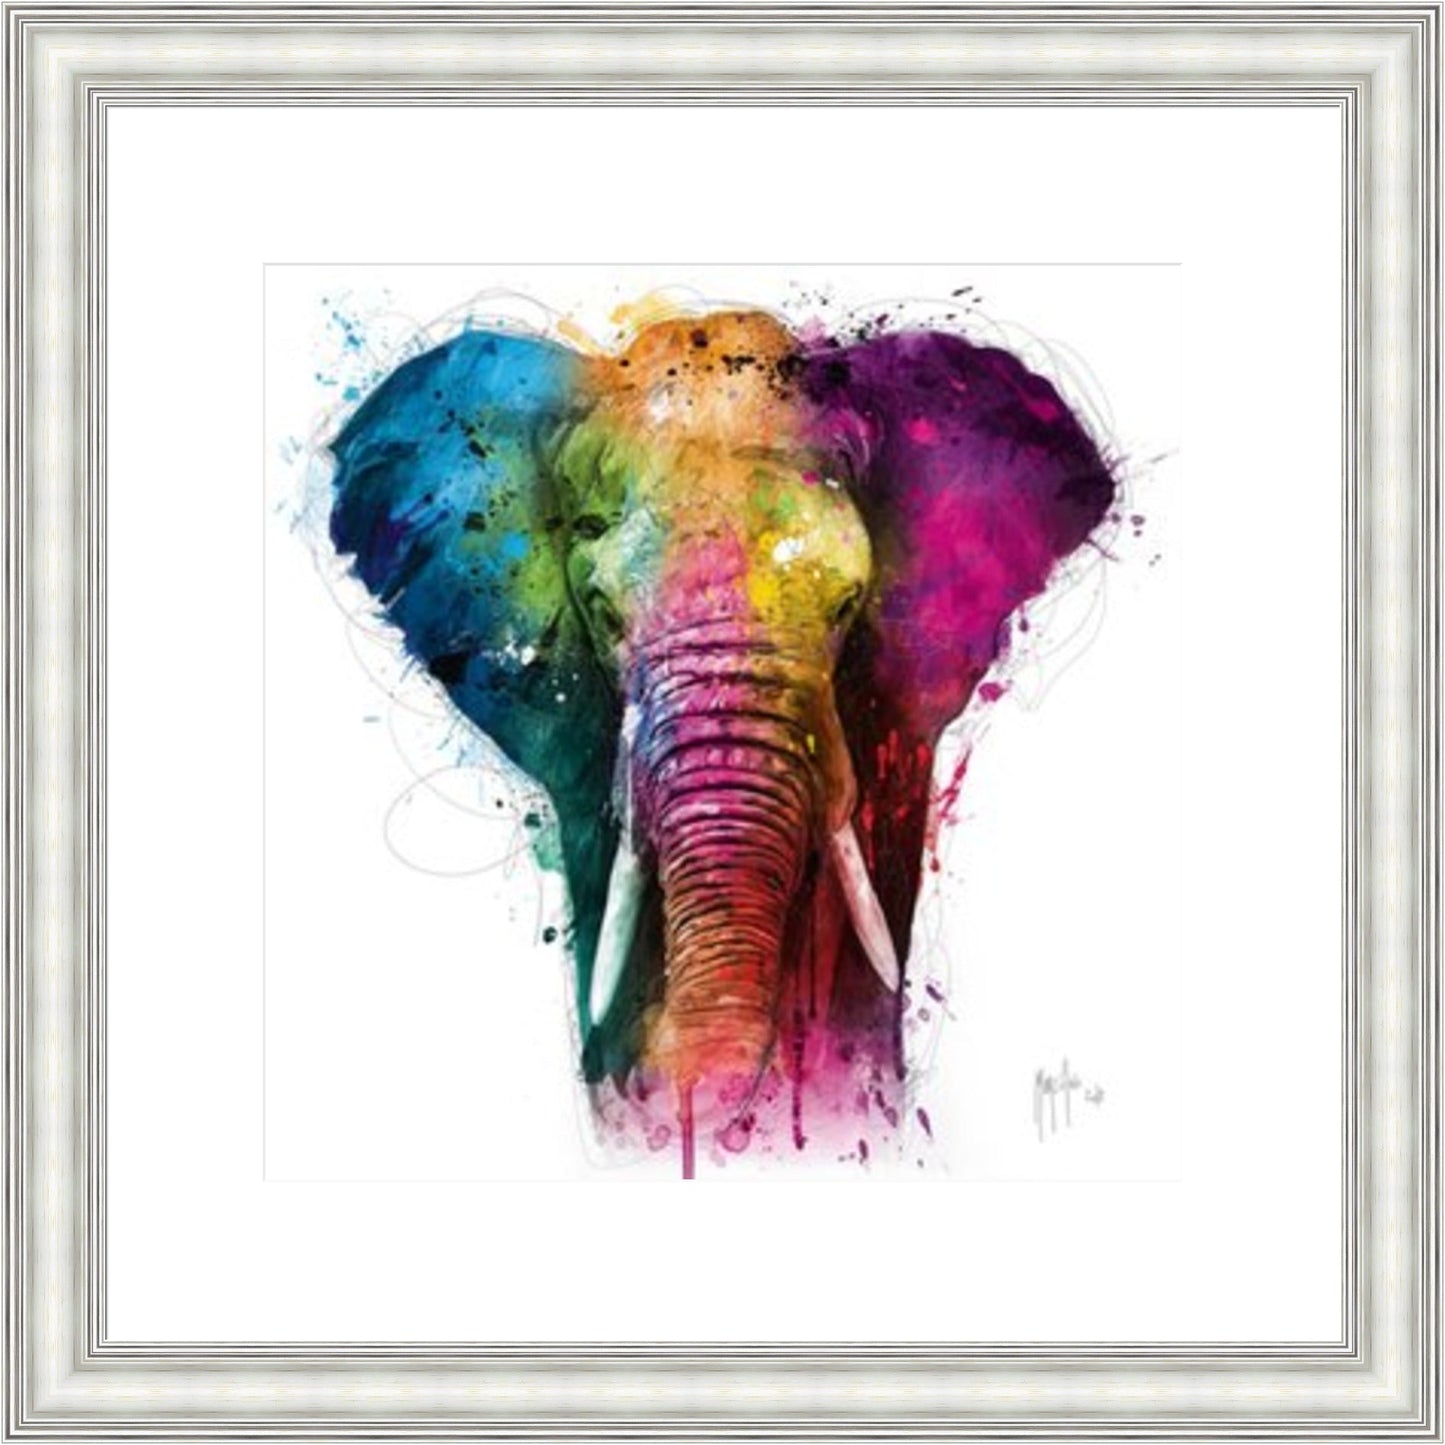 Africa Pop (Elephant) by Patrice Murciano